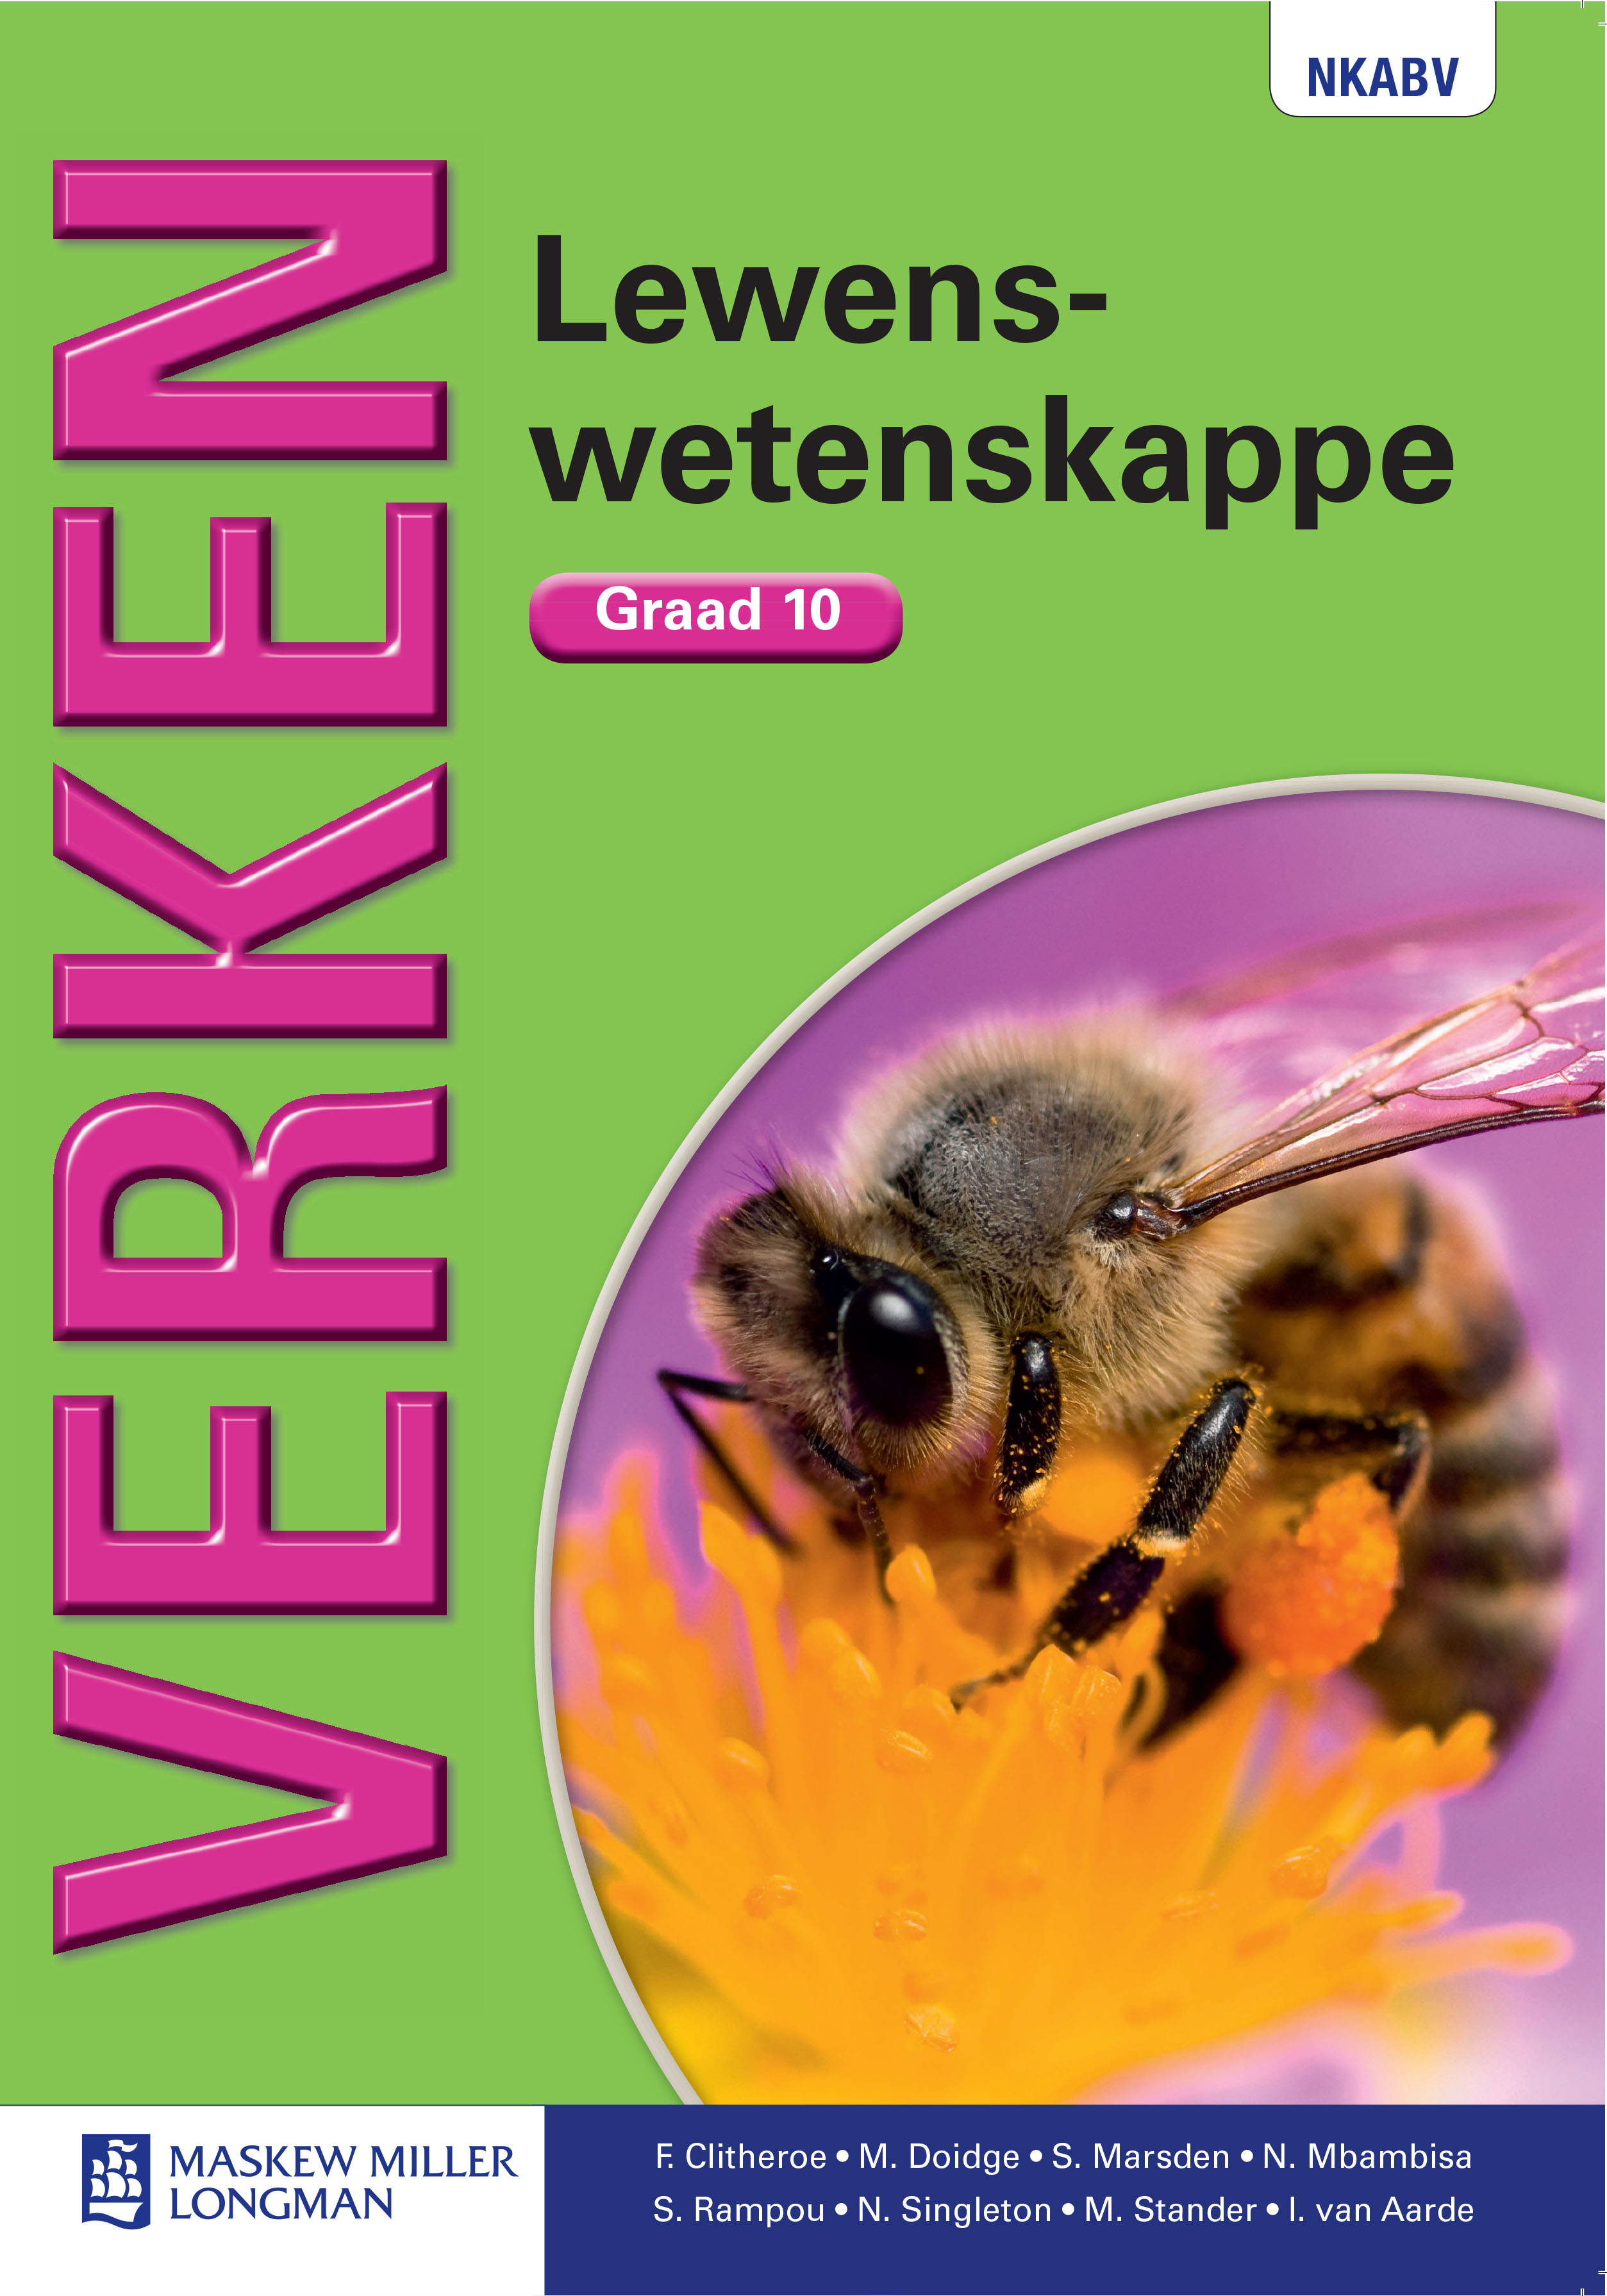 Picture of Verken Lewenswetenskappe: Verken lewenswetenskappe: Gr 10: Handboek Gr 10: Handboek